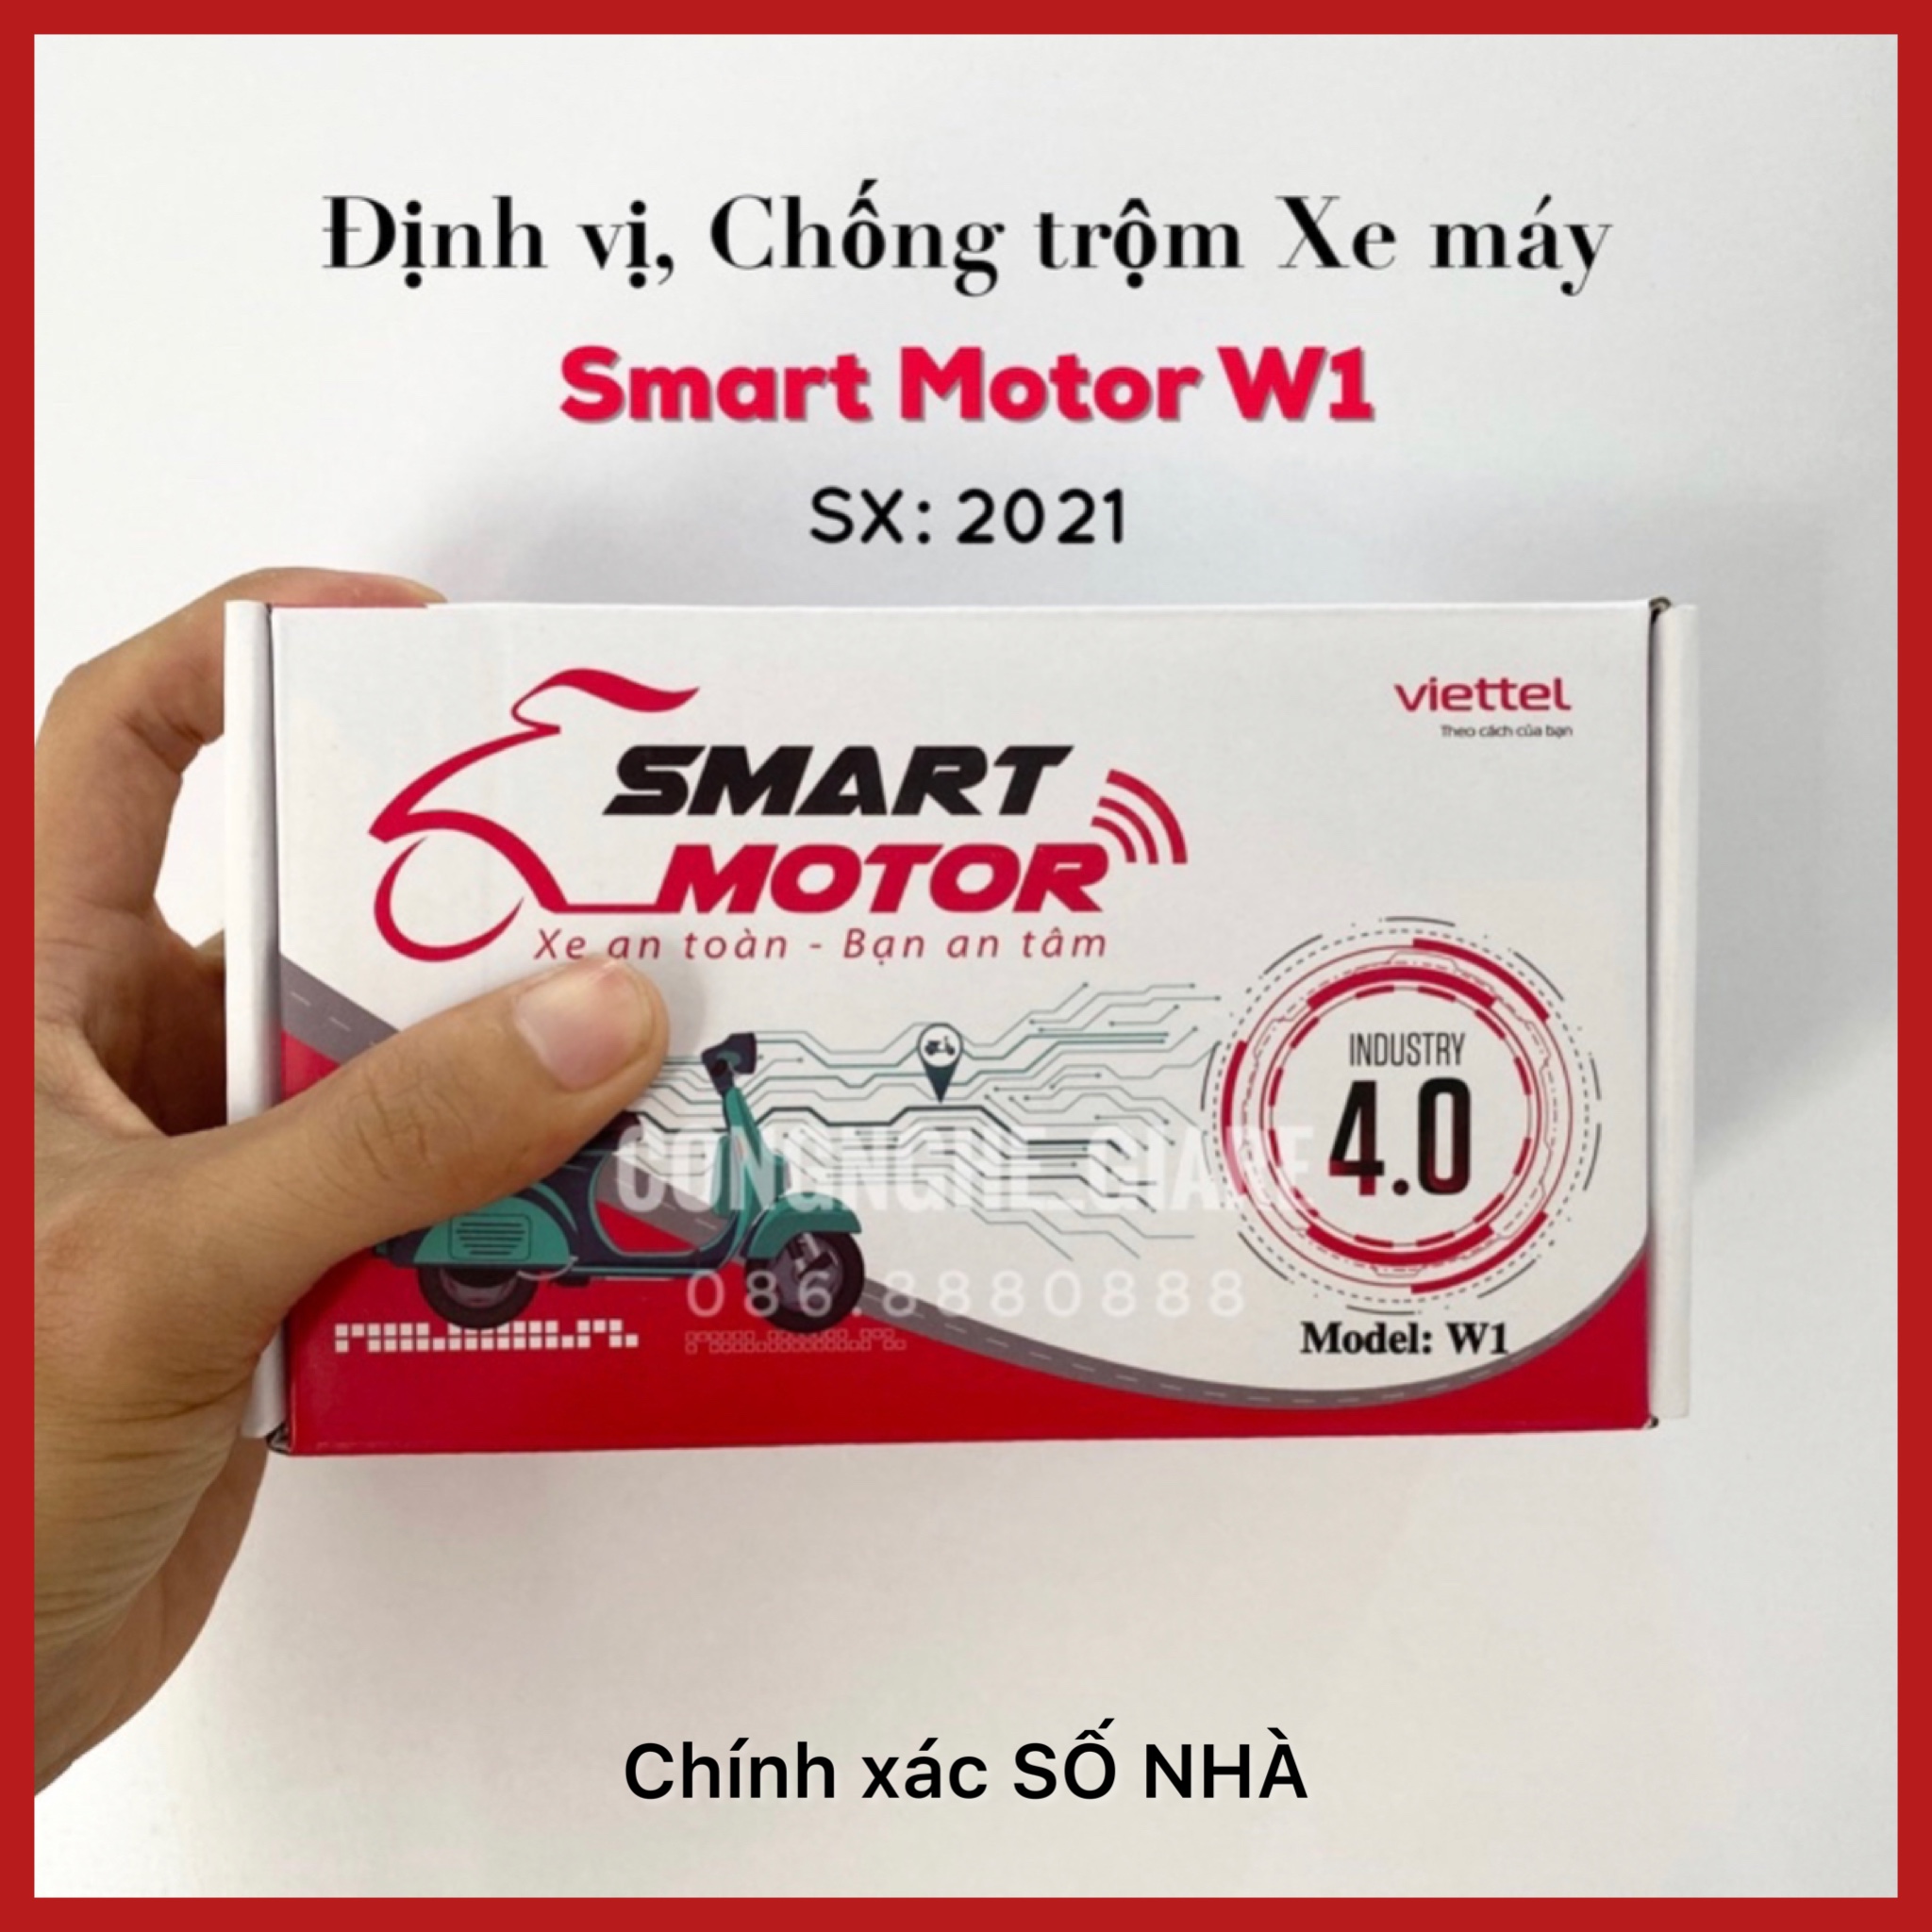 Đinh Vị Chống trộm Viettel (Đã bao gồm 1Sim free 12th) - Smart Motor W1 Viettel sx2021